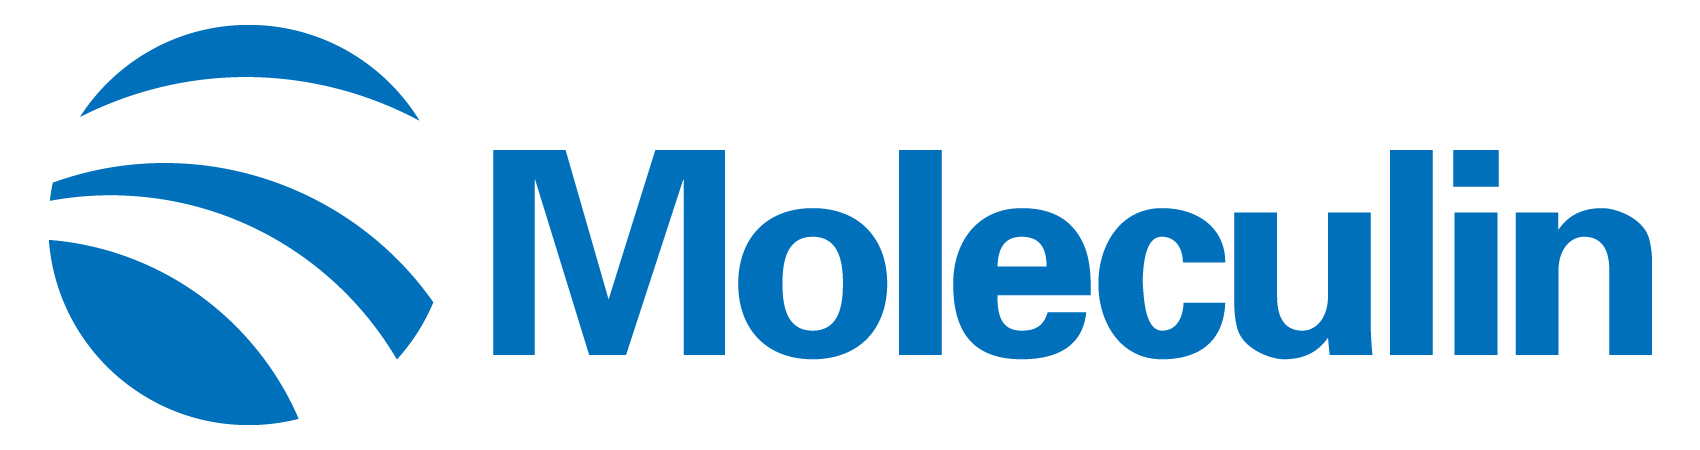 moleculin-logo_horiza22.jpg